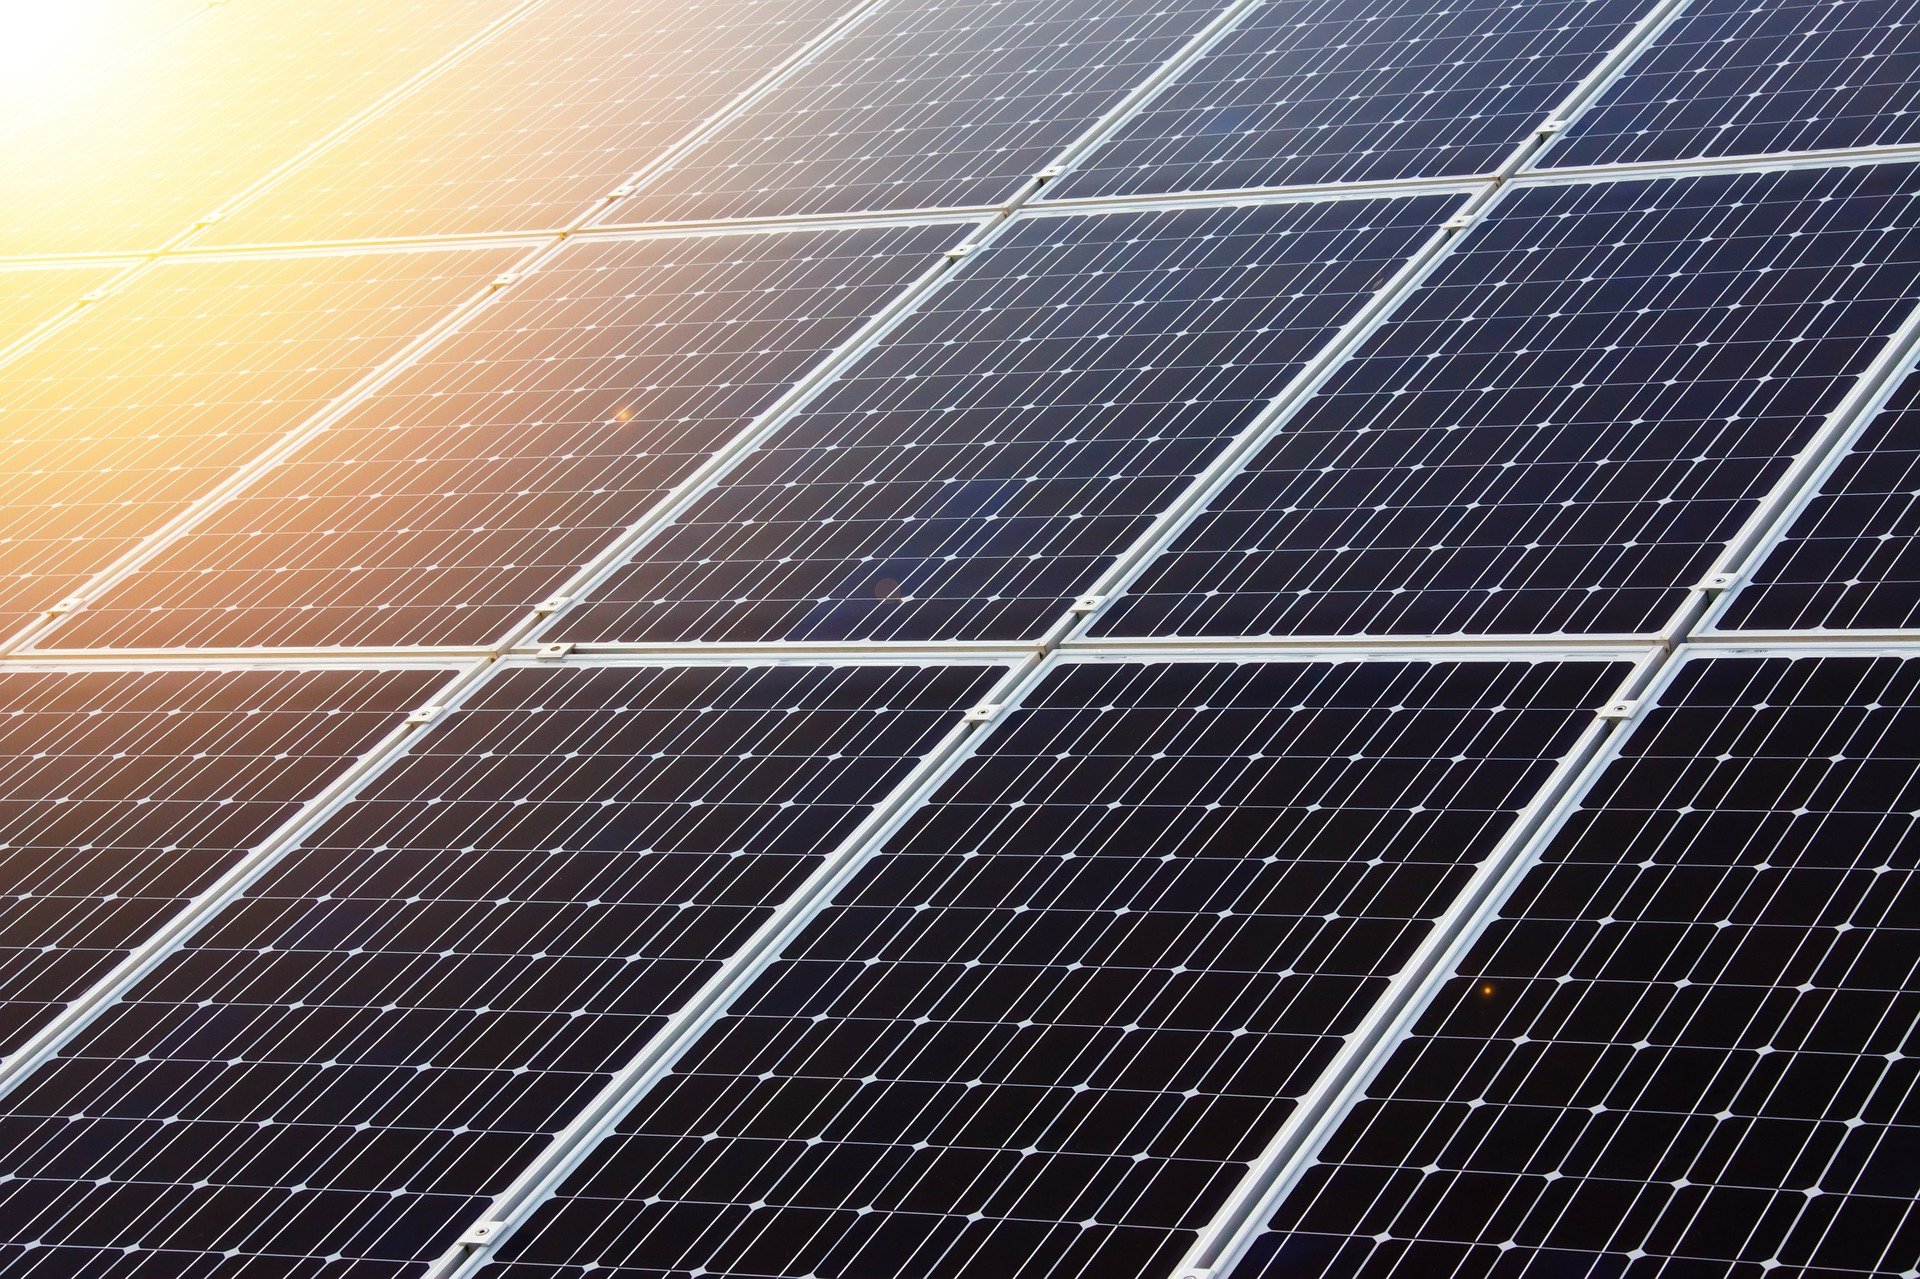 panneaux-photovoltaïques-énergie-solaire-aérovoltaïque